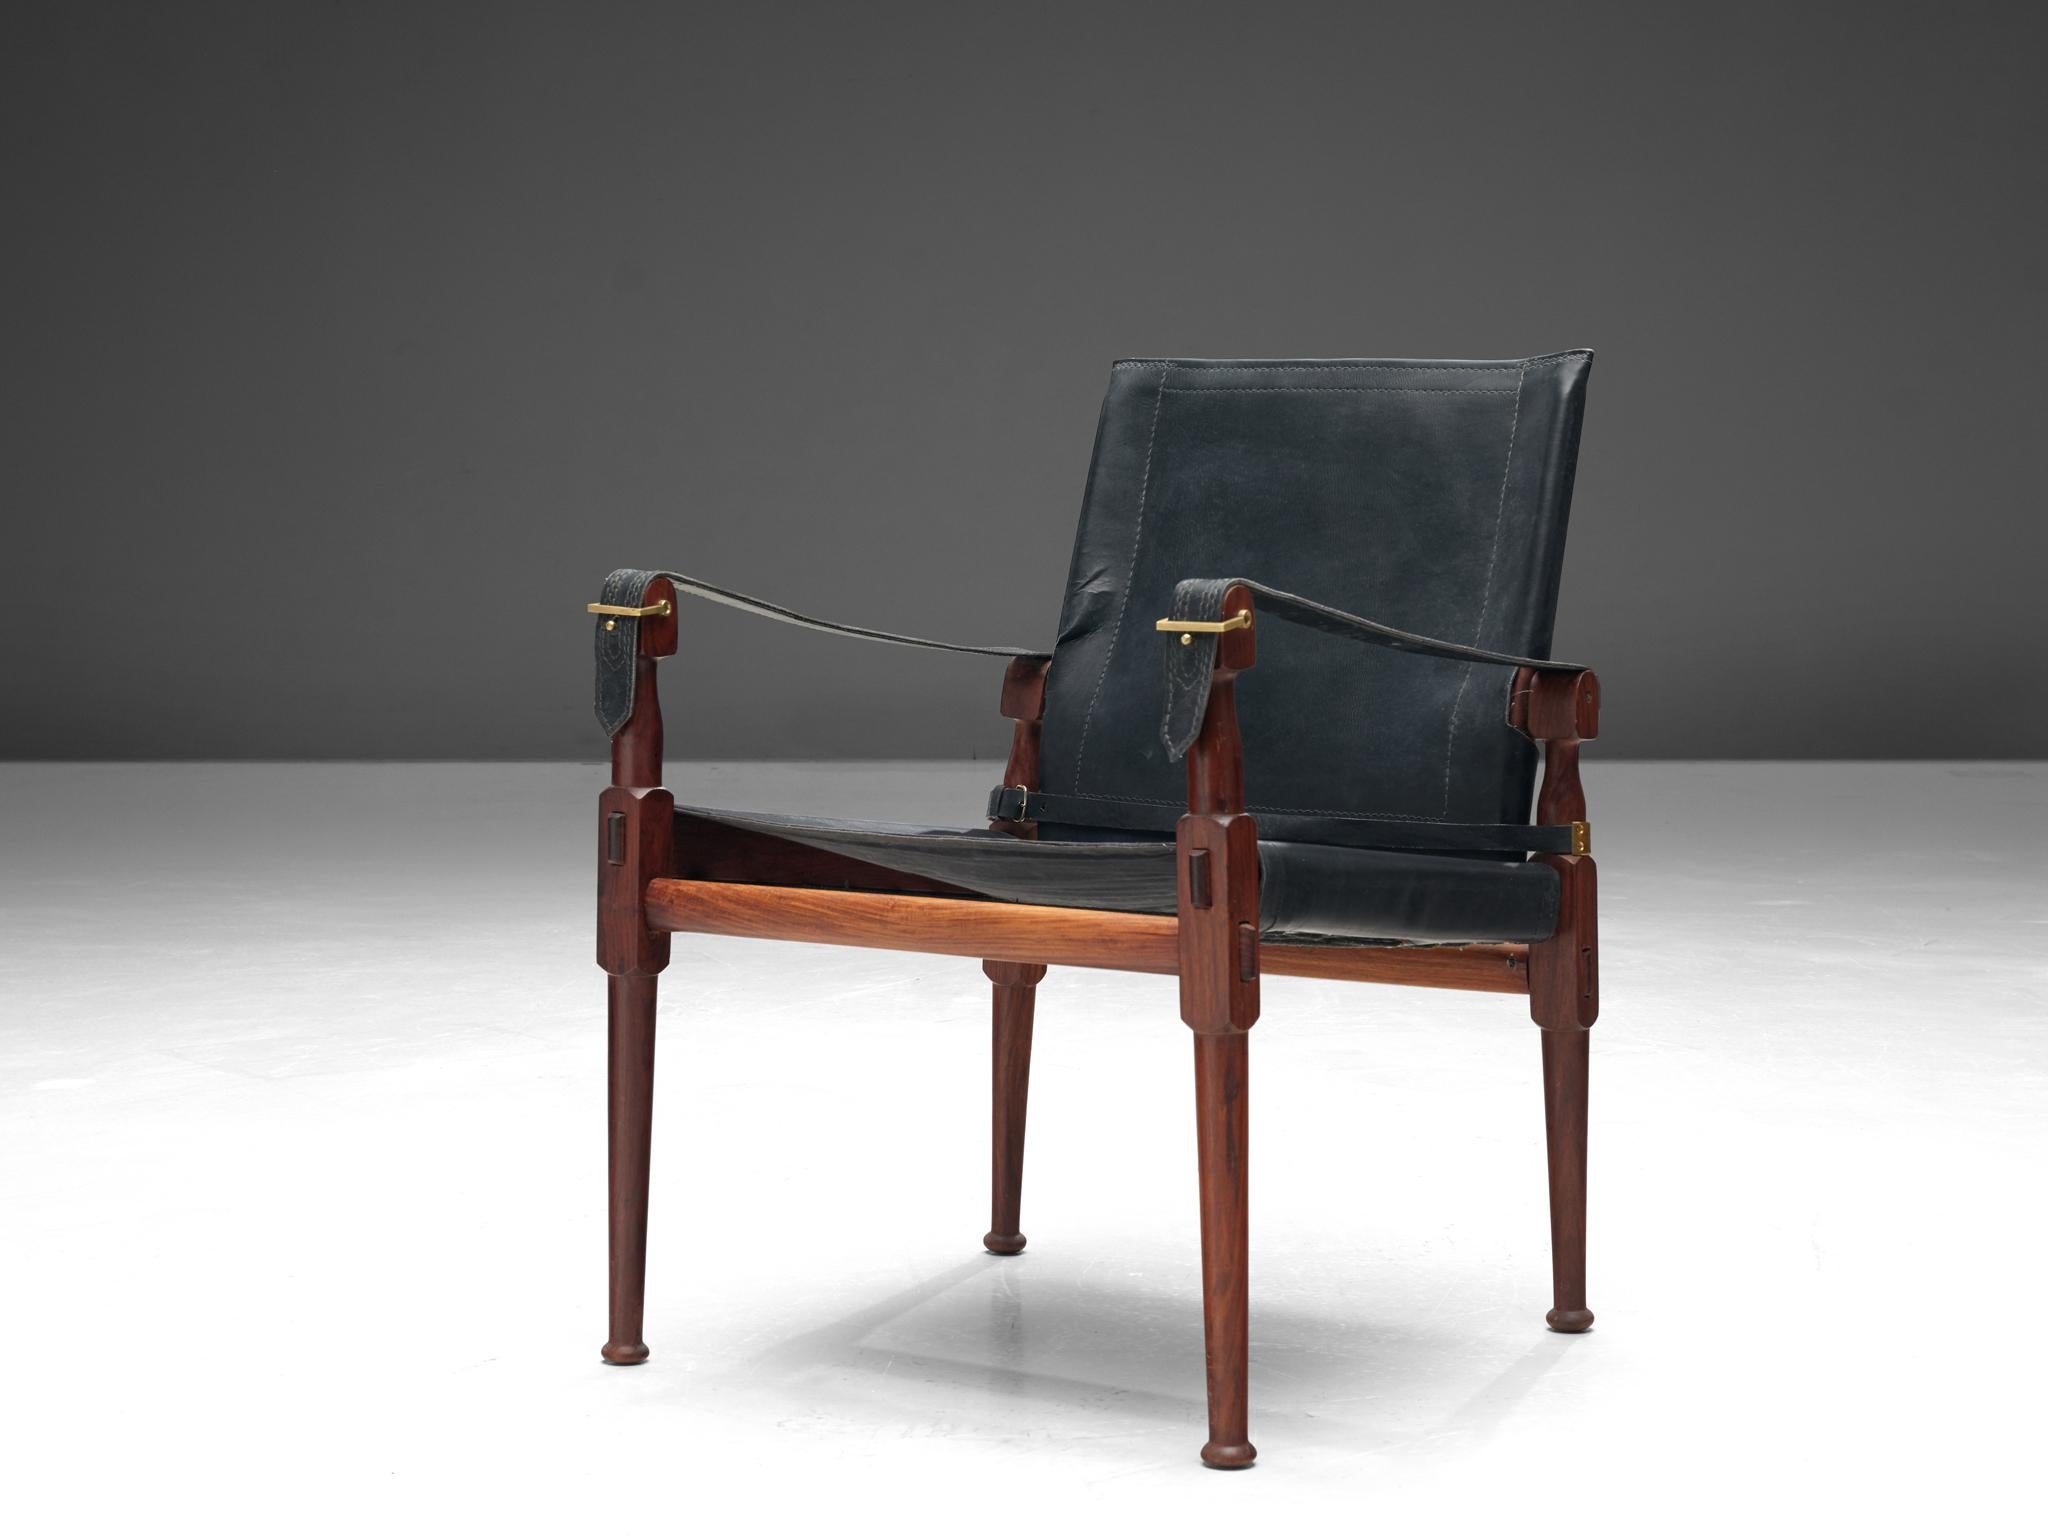 Sessel 'Safari', Holz, schwarzes Leder und Messing, Pakistan, 1970er Jahre

Dieser Sessel 'Safari' zeigt sehr elegante und gut durchdachte Linien in Kombination mit sorgfältig gearbeiteten Holzverbindungen. Das schwarze Leder mit mehreren Riemen